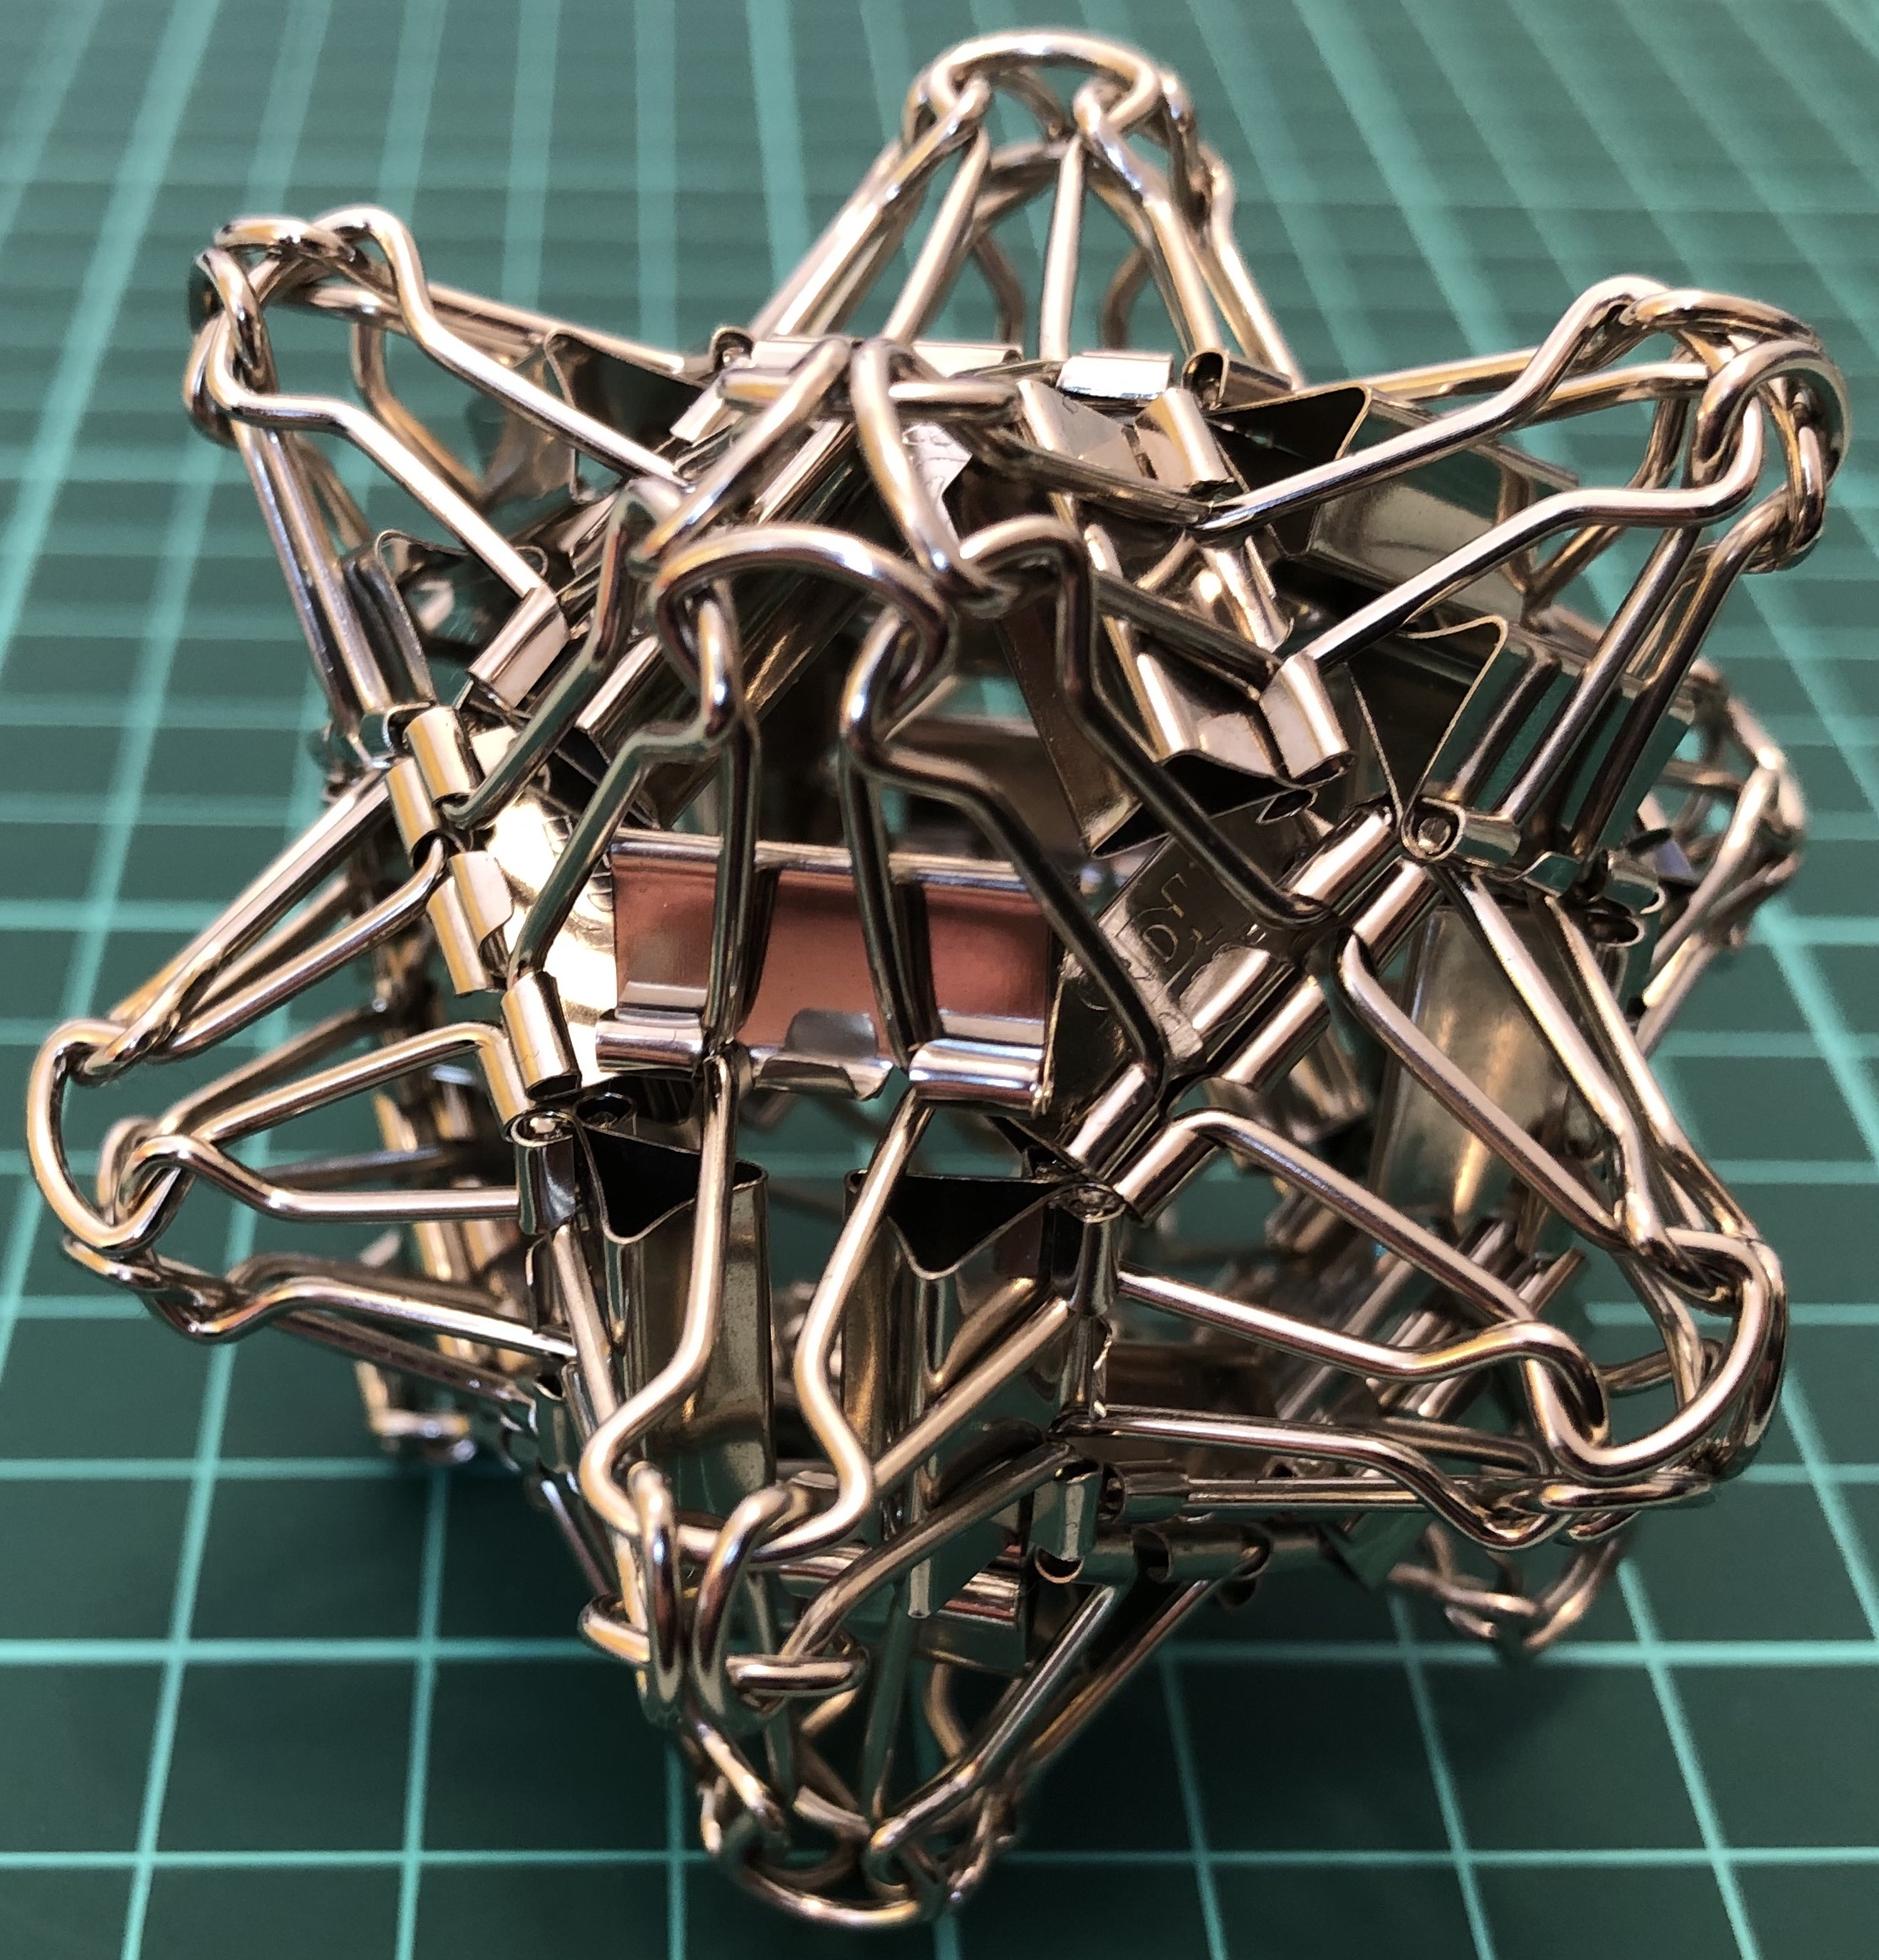 36 clips forming spiky tetrakis hexahedron